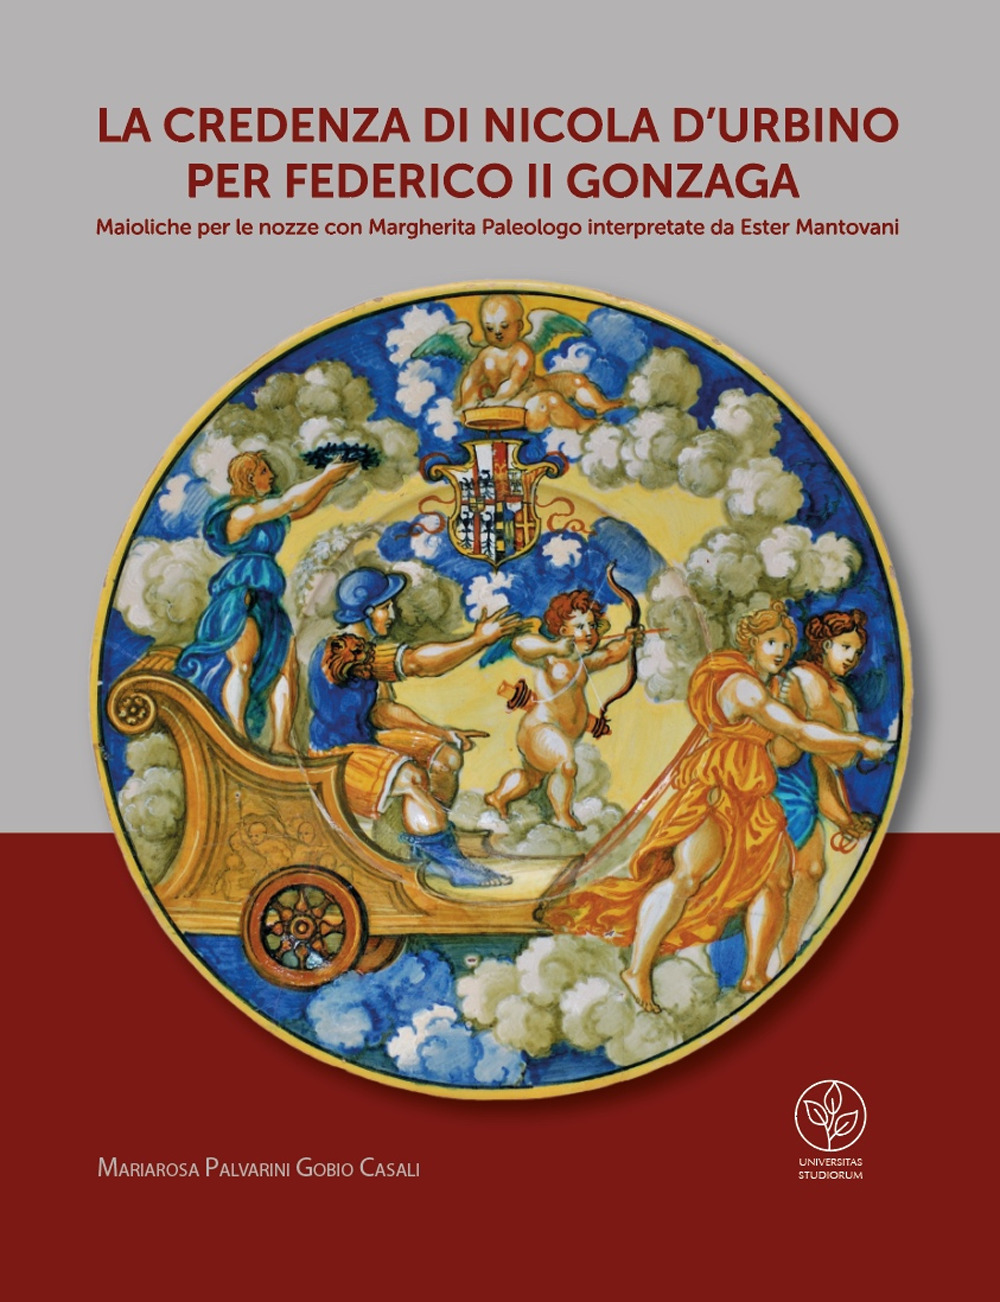 La credenza di Nicola d'Urbino per Federico II Gonzaga. Maioliche per le nozze con Margherita Paleologo interpretate da Ester Mantovani